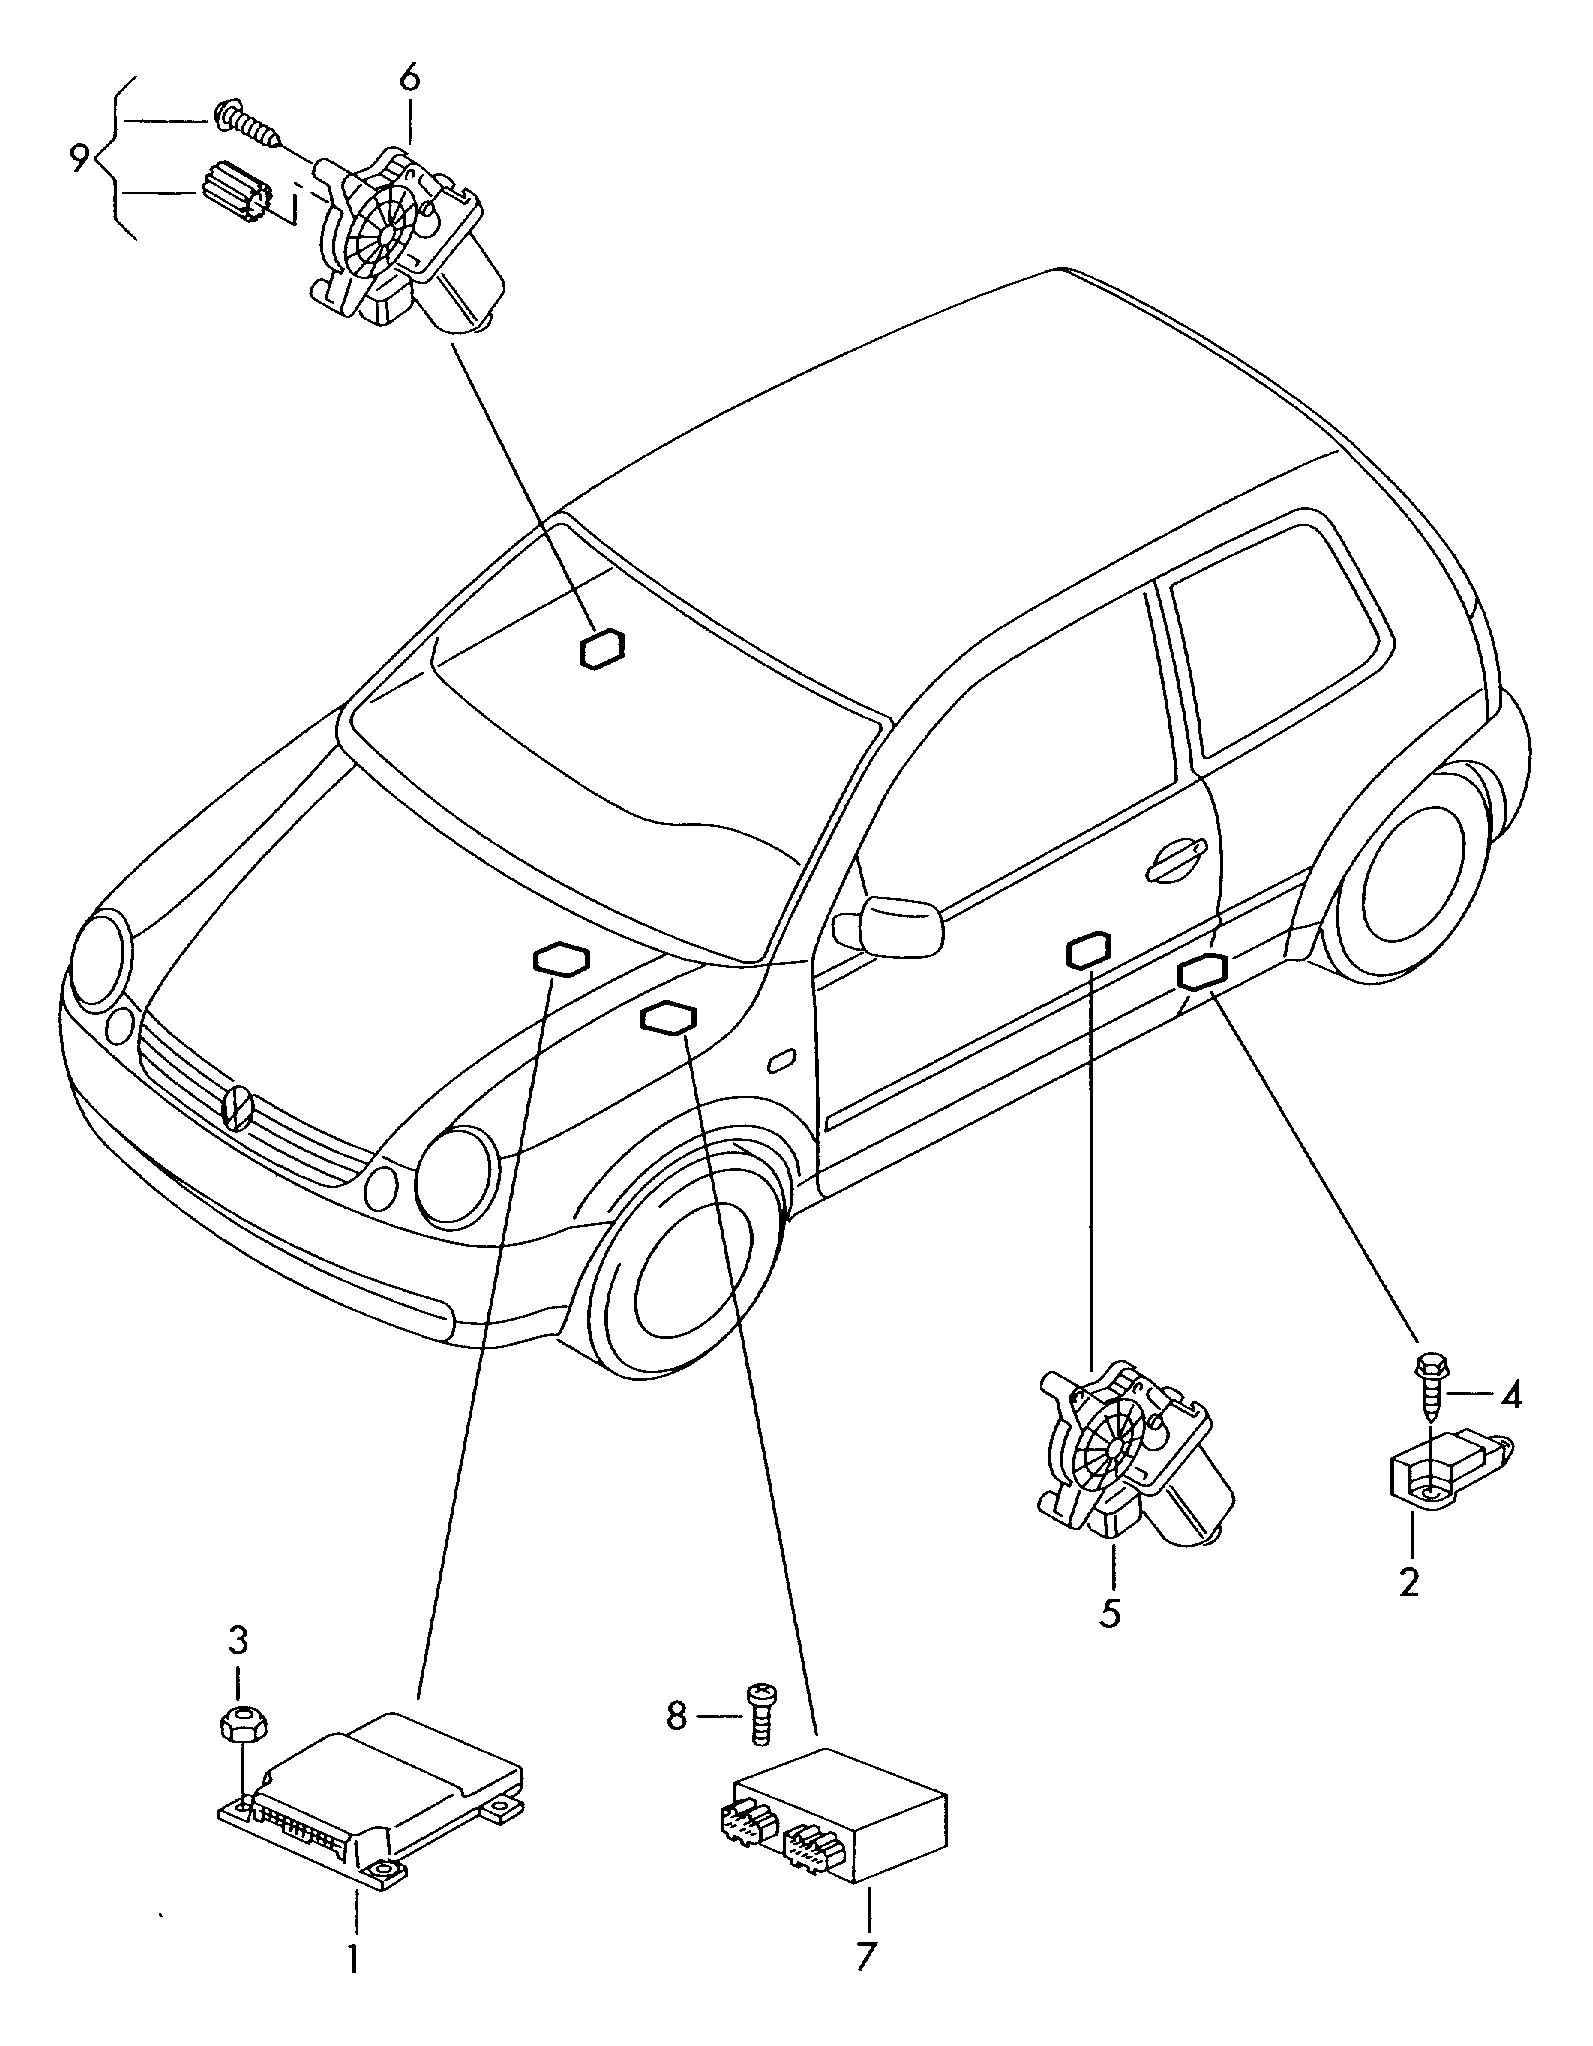 车窗升降器马达; 中央门锁
控制单元 - Lupo / Lupo 3L TDI(LU)  